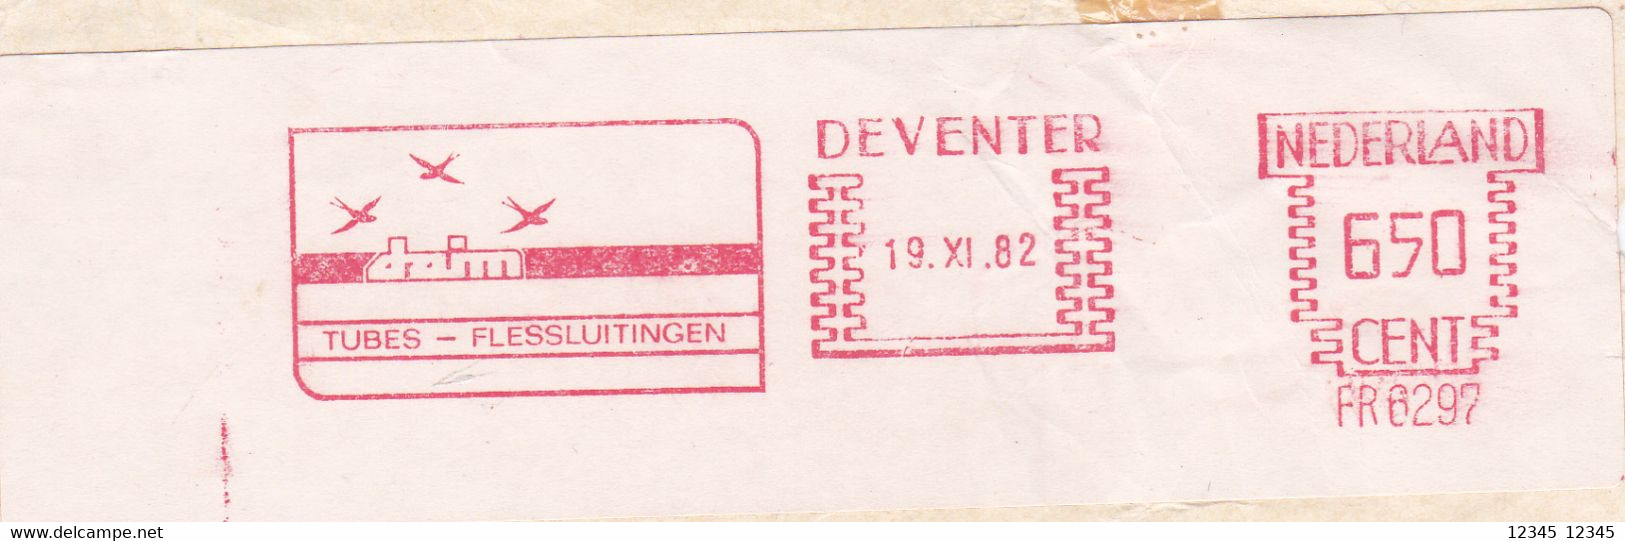 Nederland 1982, Daim Tubes-flessluitingen, Deventer - Frankeermachines (EMA)